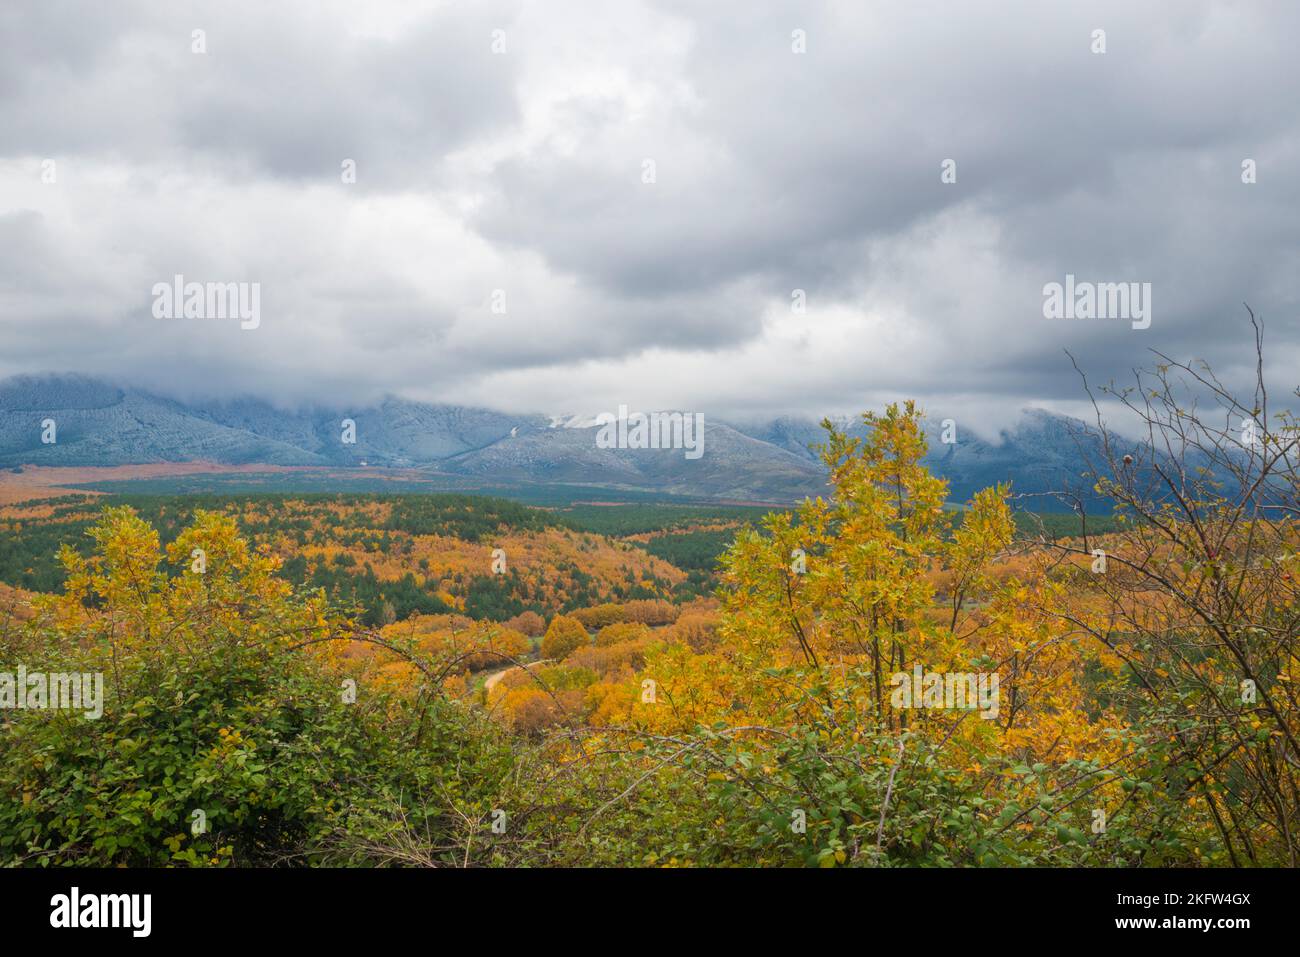 Autumn landscape. Riaza, Segovia province, Castilla Leon, Spain. Stock Photo